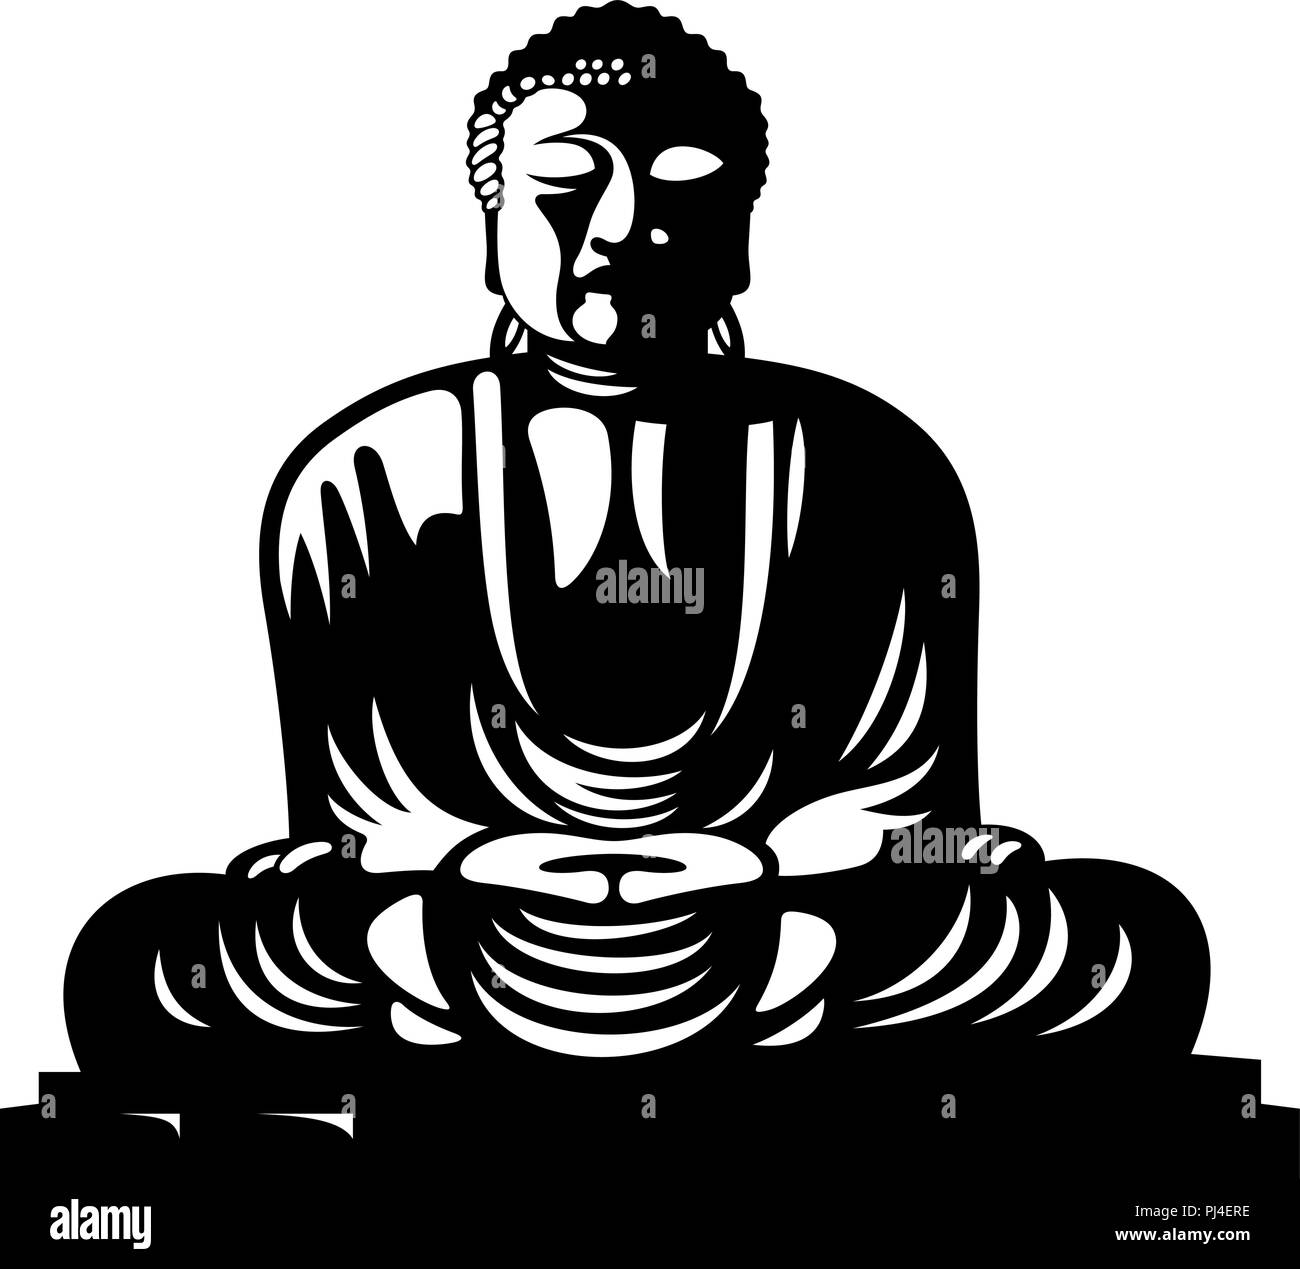 Statue de Bouddha assis dans la position du lotus. Symbole religieux d'Asie Illustration de Vecteur